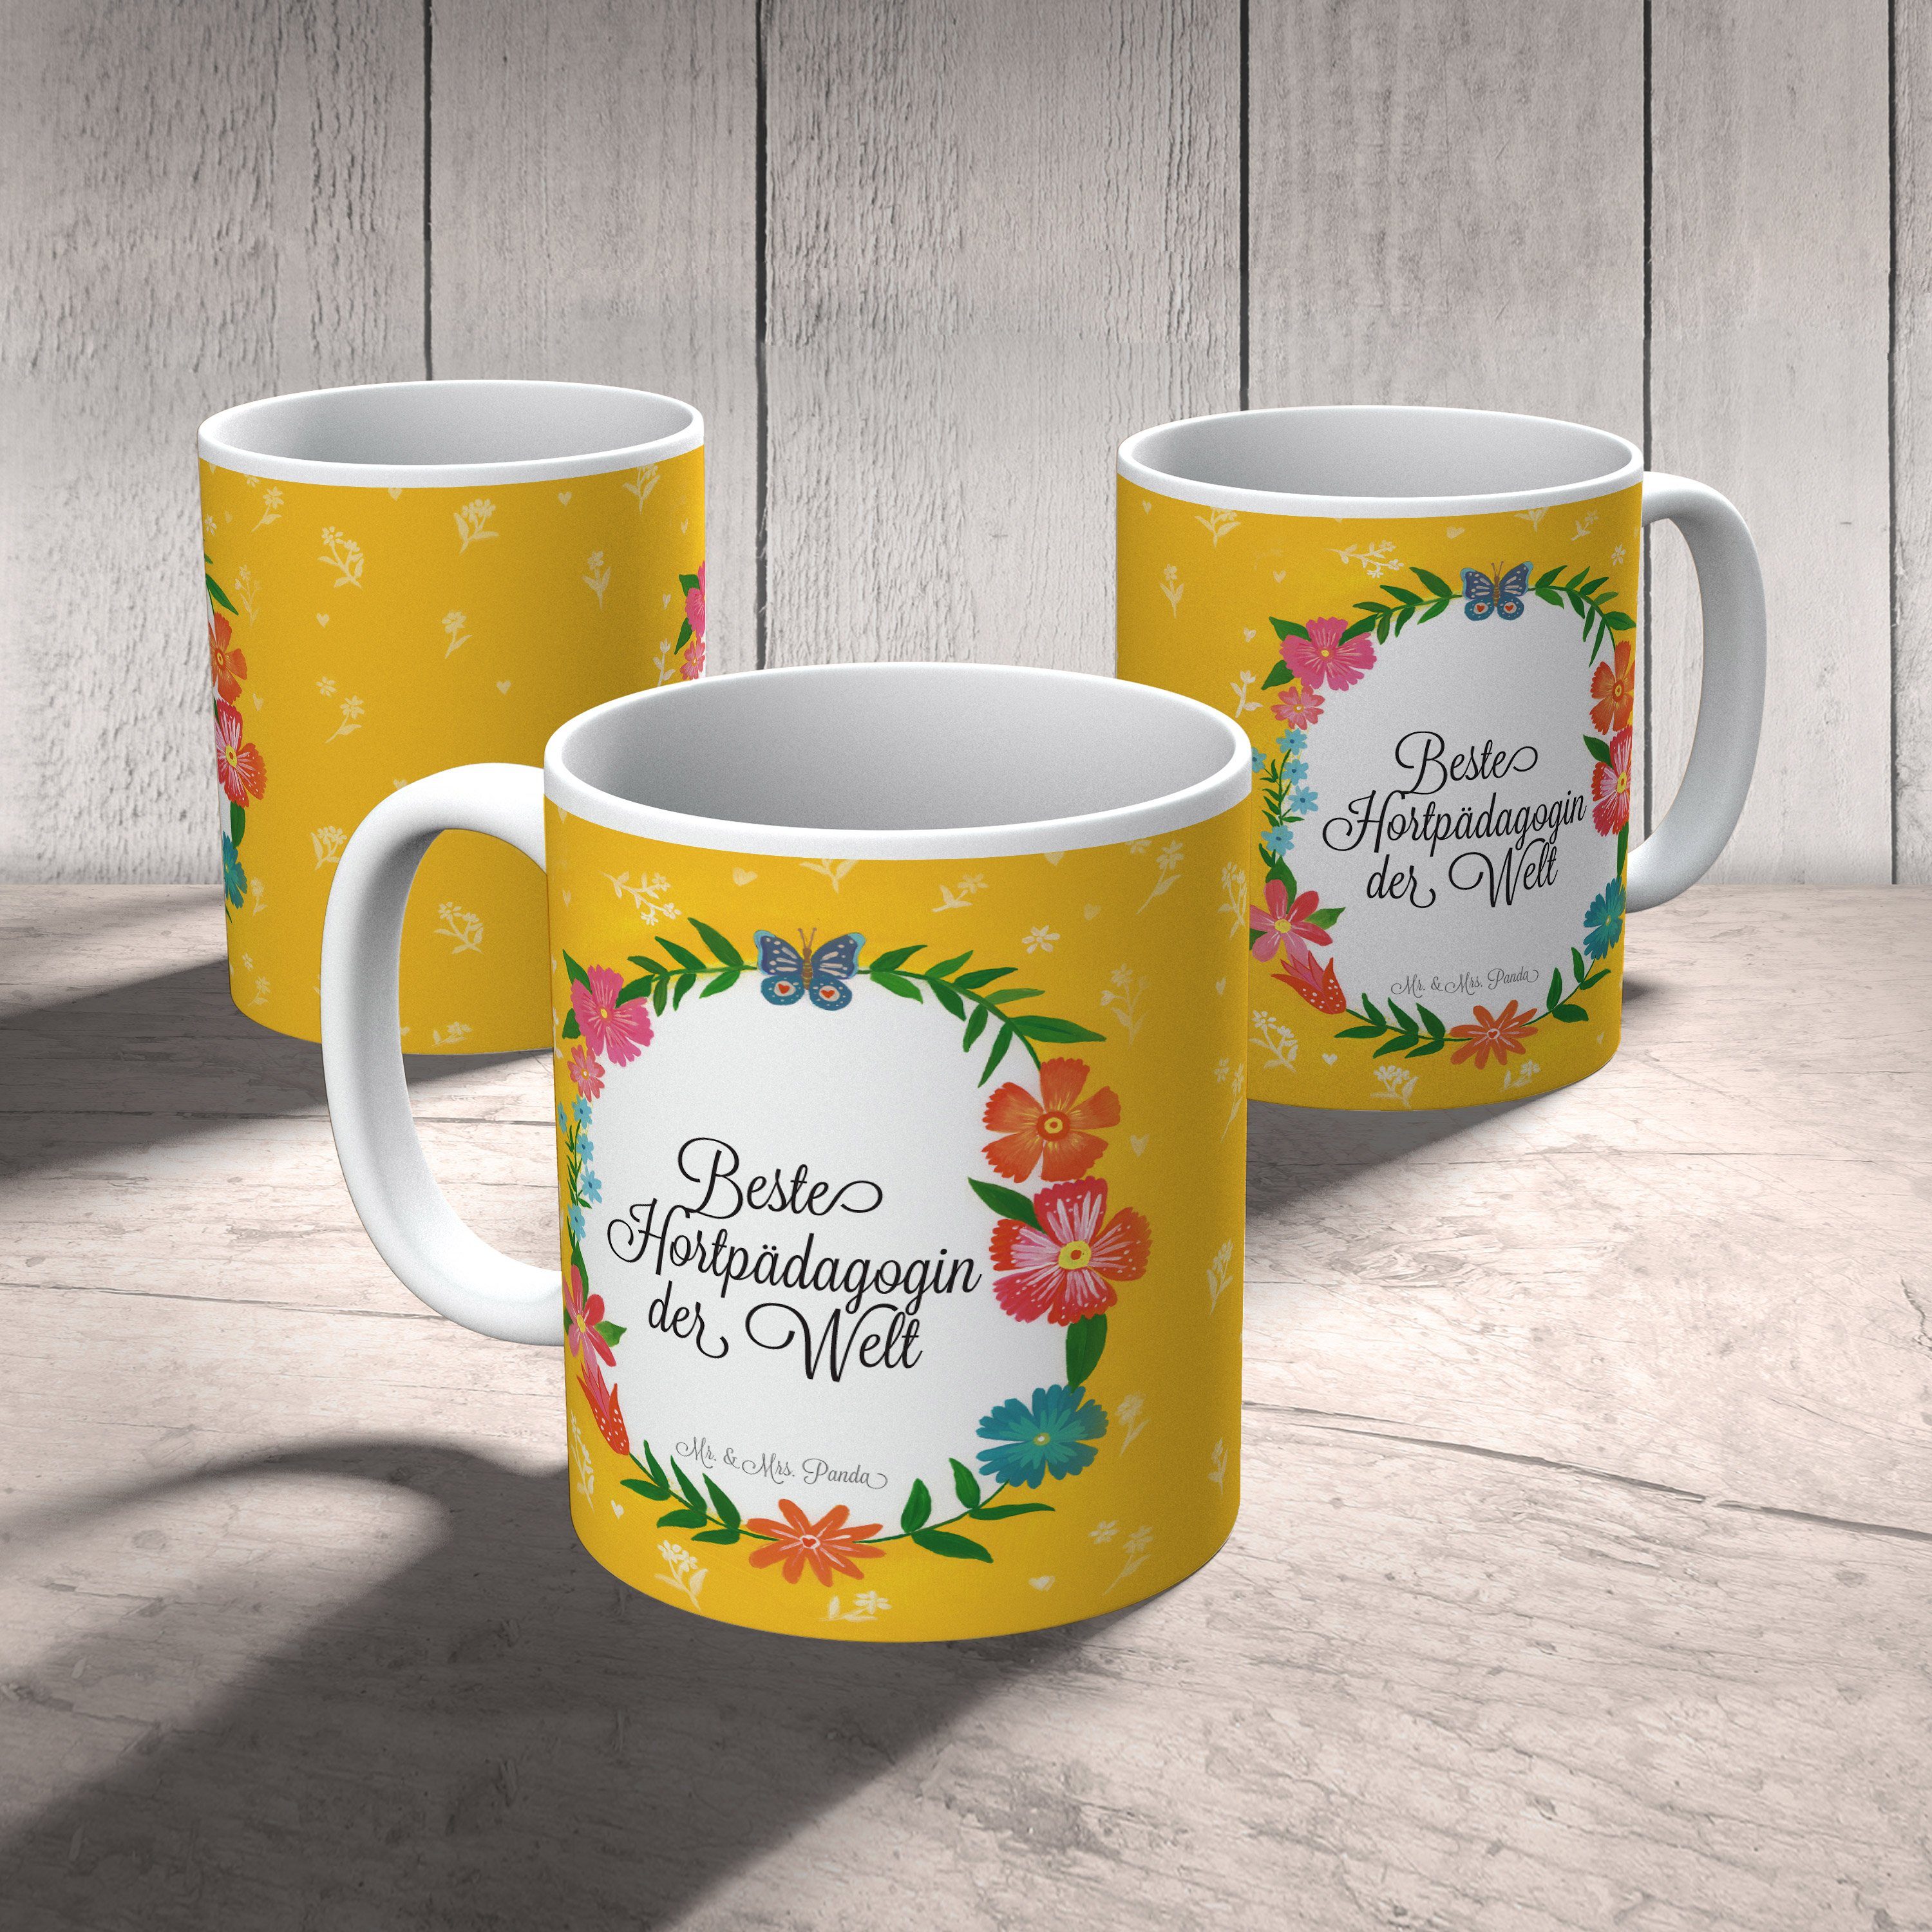 Geschenk, Gratulation, & R, Hortpädagogin Kaffeetasse, Geschenk Mr. Mrs. Keramik Tasse, Panda Tasse -